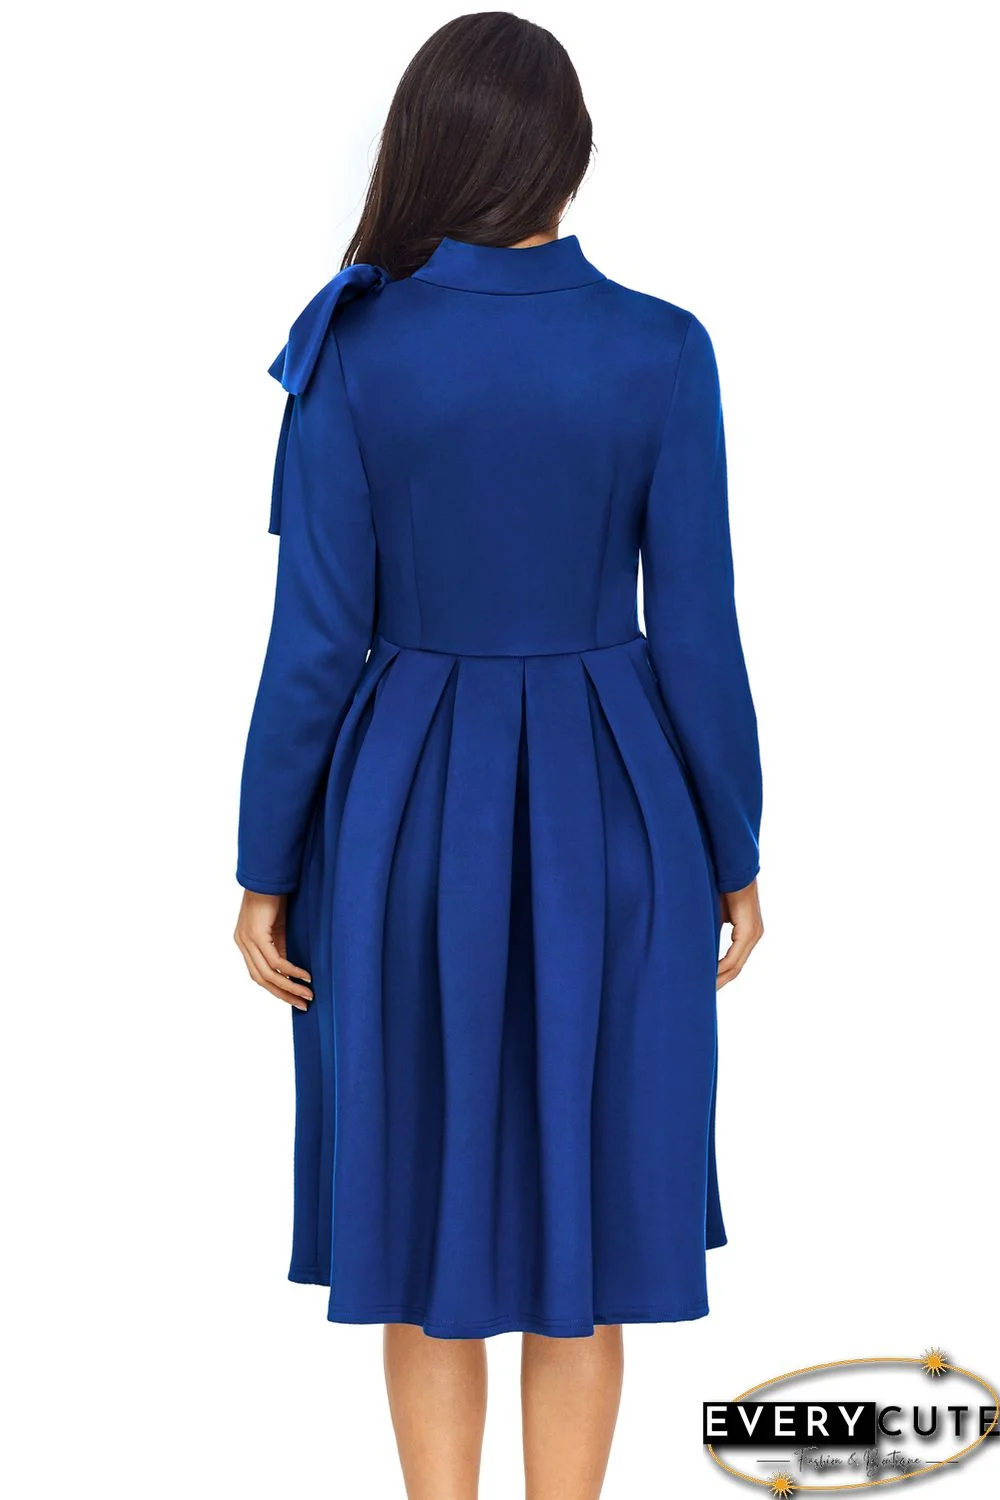 Royal Blue Bowknot Embellished Mock Neck Pocket Dress